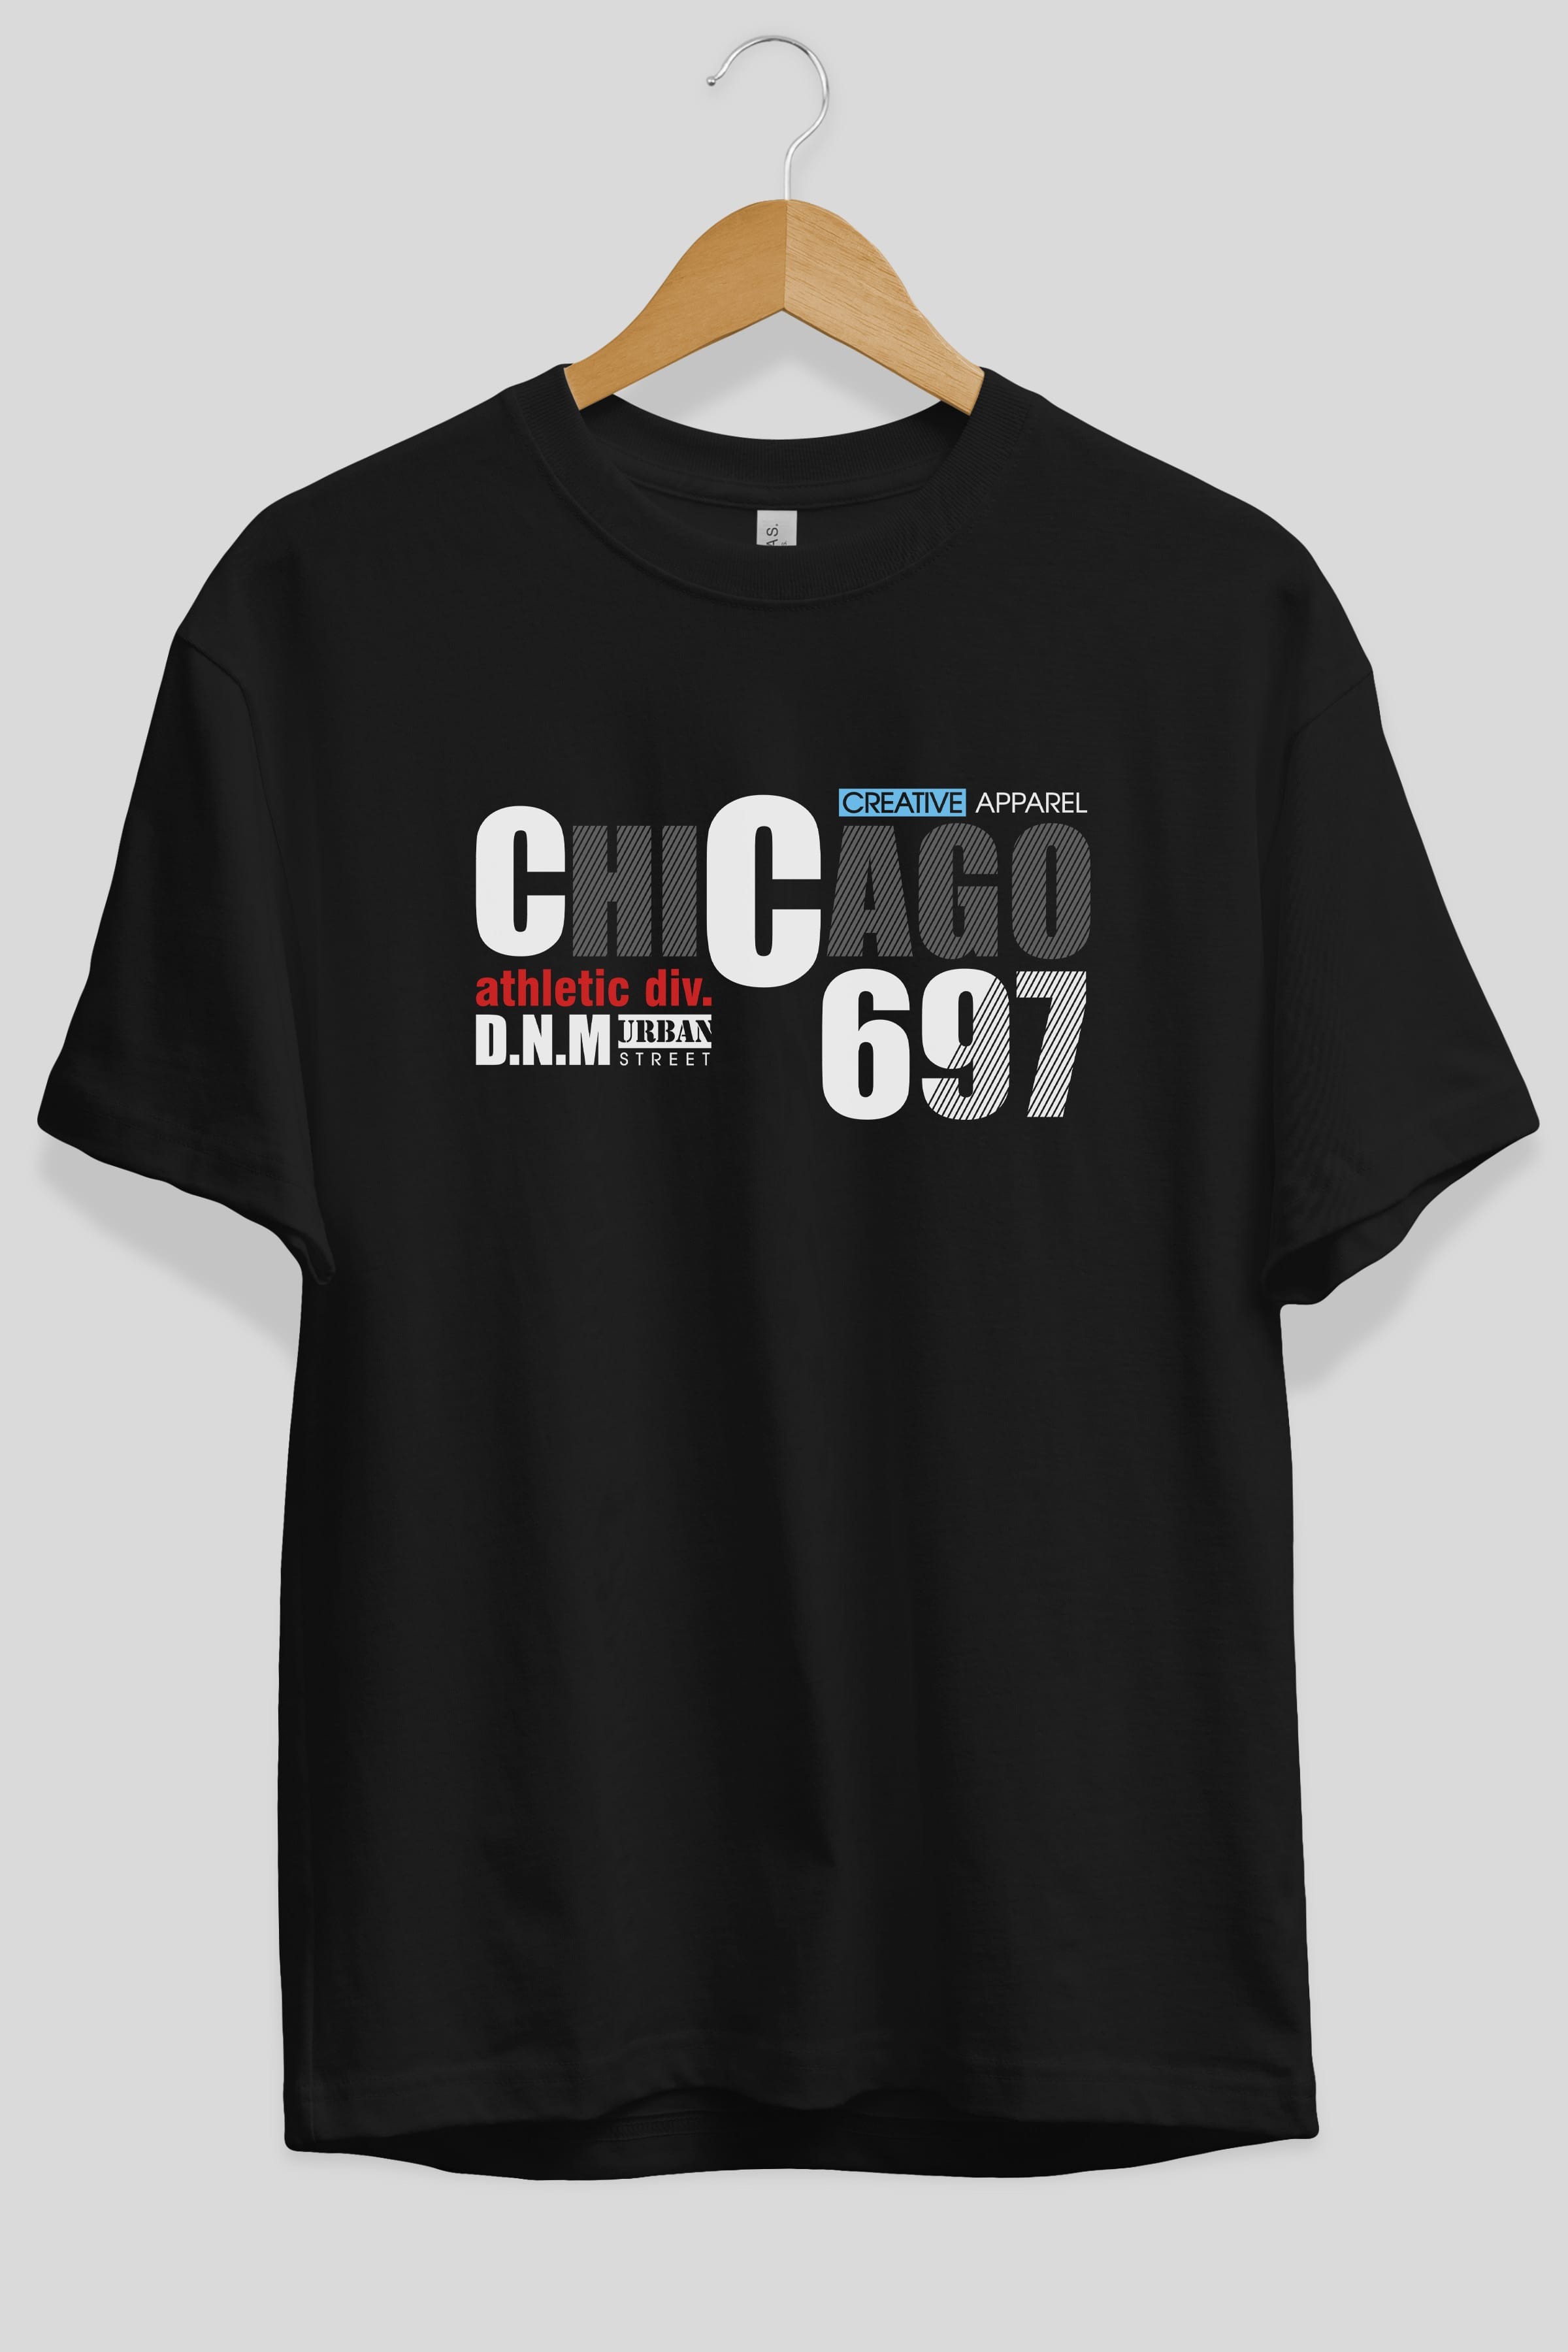 Chicago 697 Ön Baskılı Oversize t-shirt Erkek Kadın Unisex